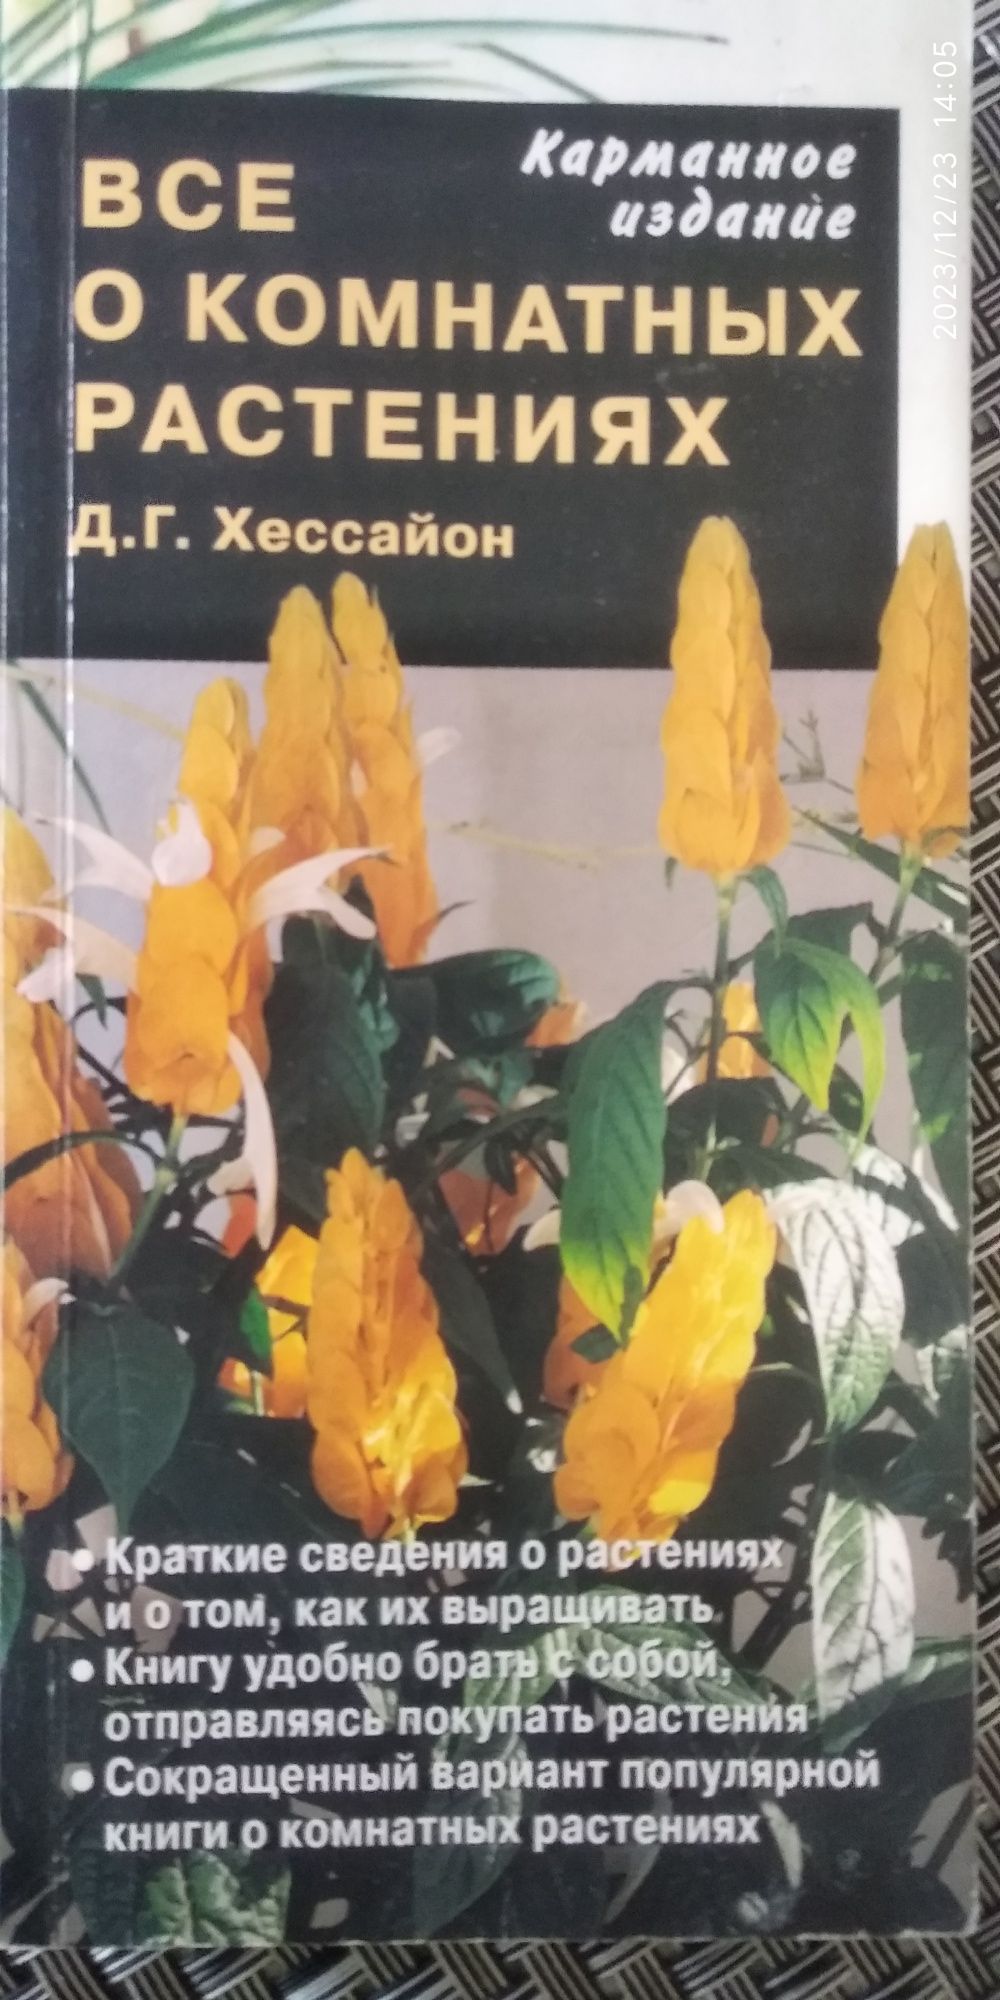 Д.Хессайон "Всё о комнатных растениях", карманное издание